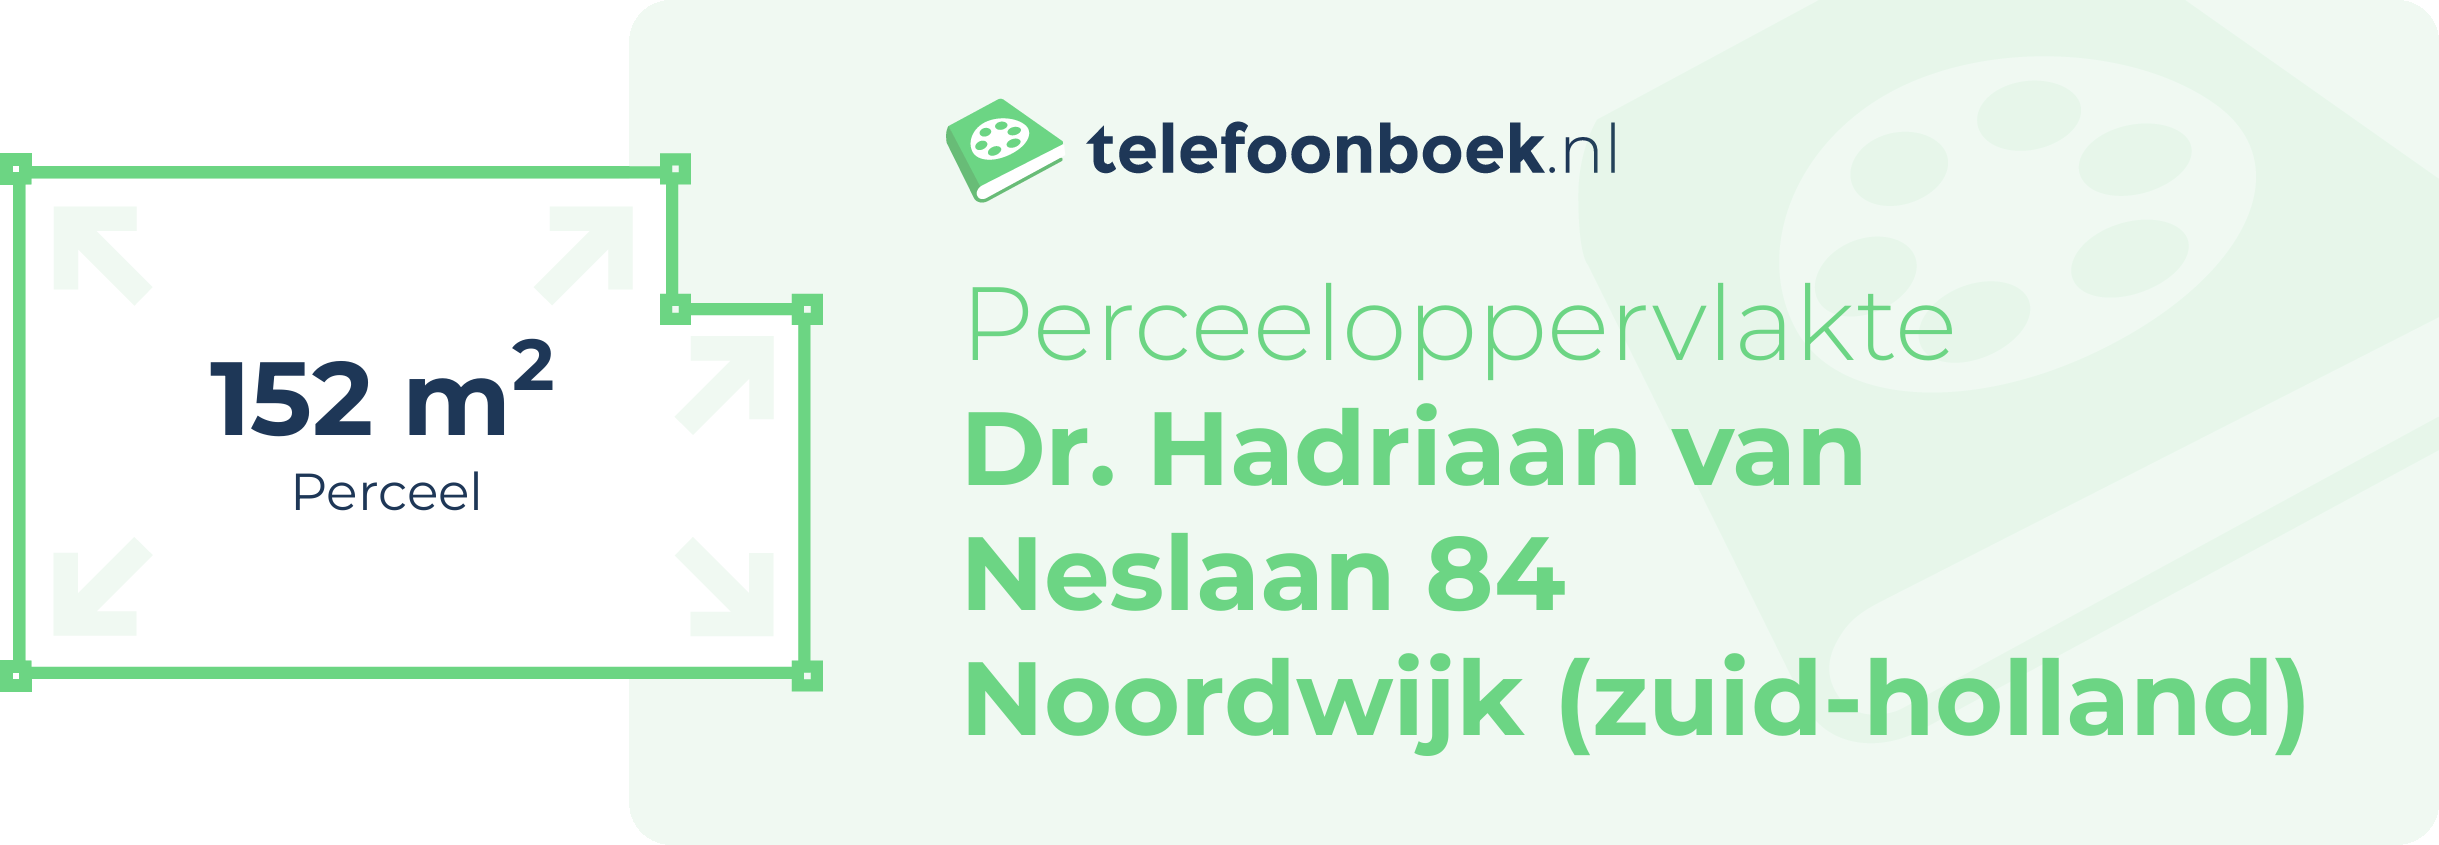 Perceeloppervlakte Dr. Hadriaan Van Neslaan 84 Noordwijk (Zuid-Holland)